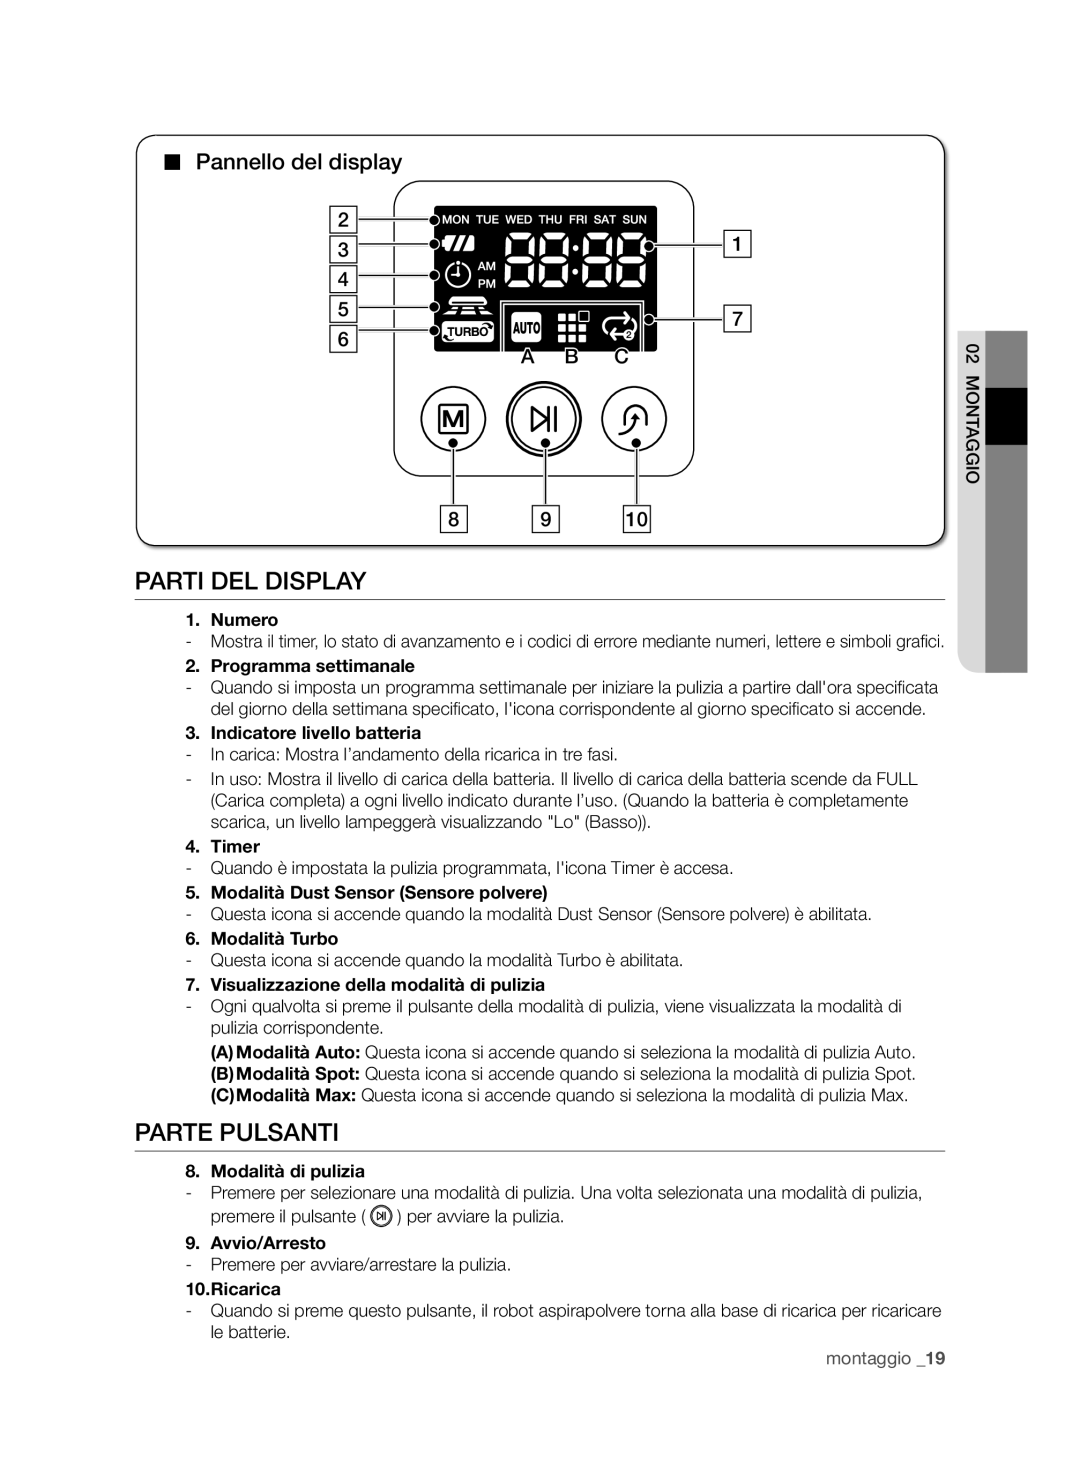 Samsung VCR8950L3B/XEF manual Parti Del Display, Parte Pulsanti, Pannello del display, A B C, Numero, Programma settimanale 